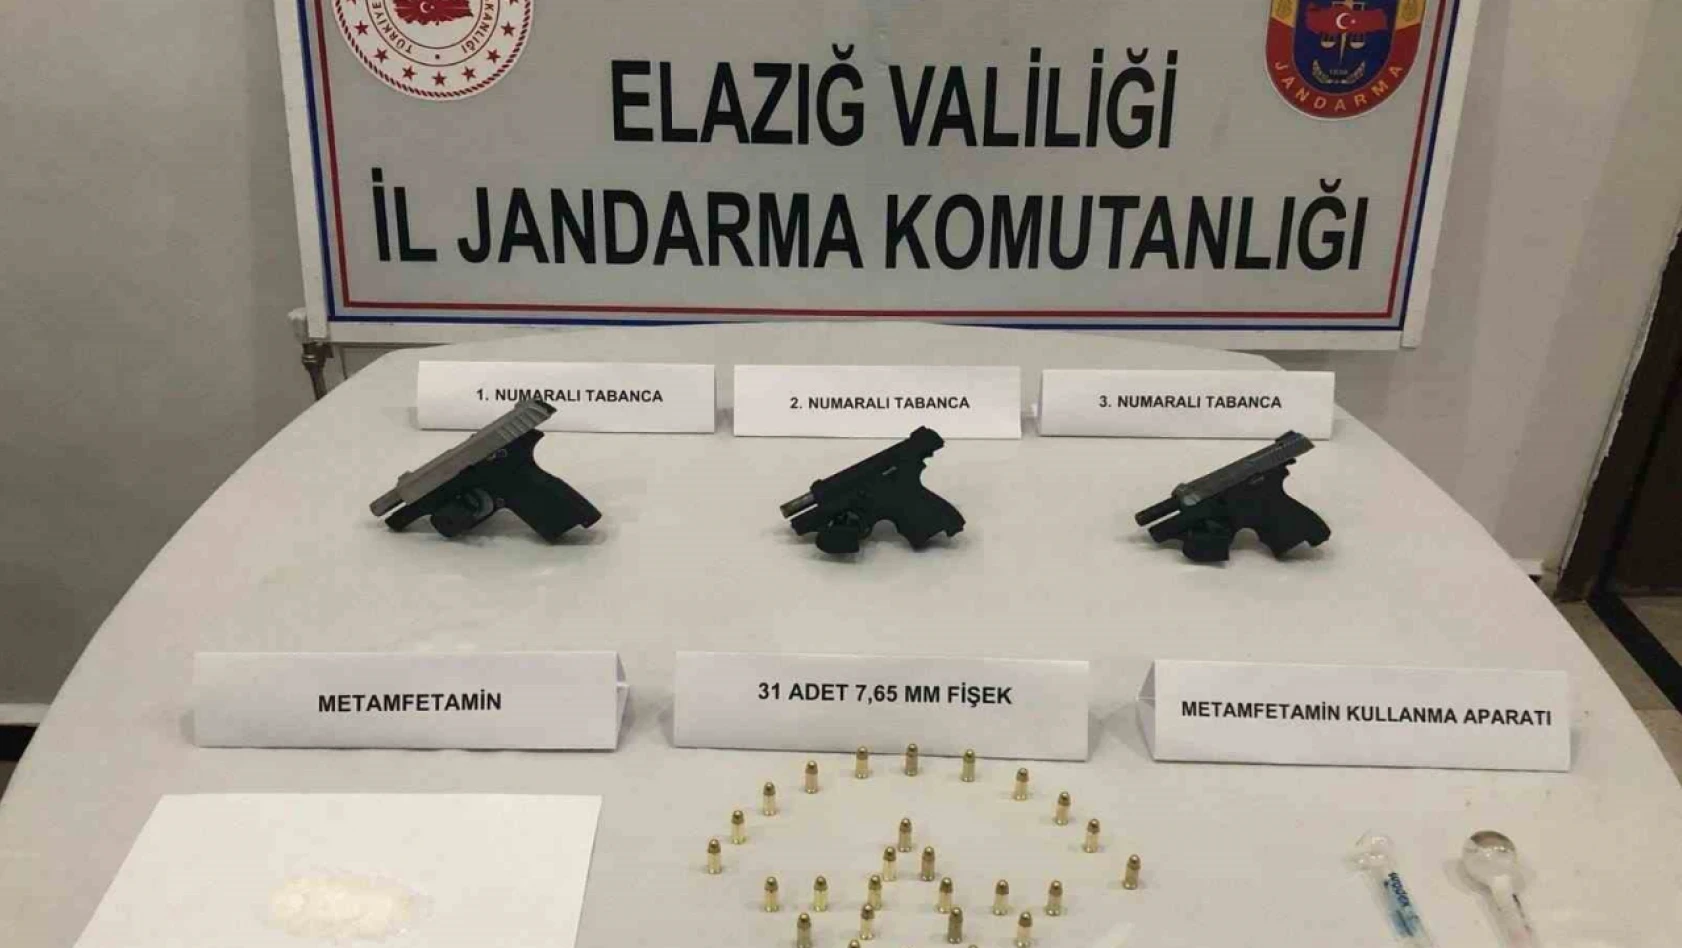 Elazığ'da ruhsatsız silah ve uyuşturucu operasyonu: 2 gözaltı